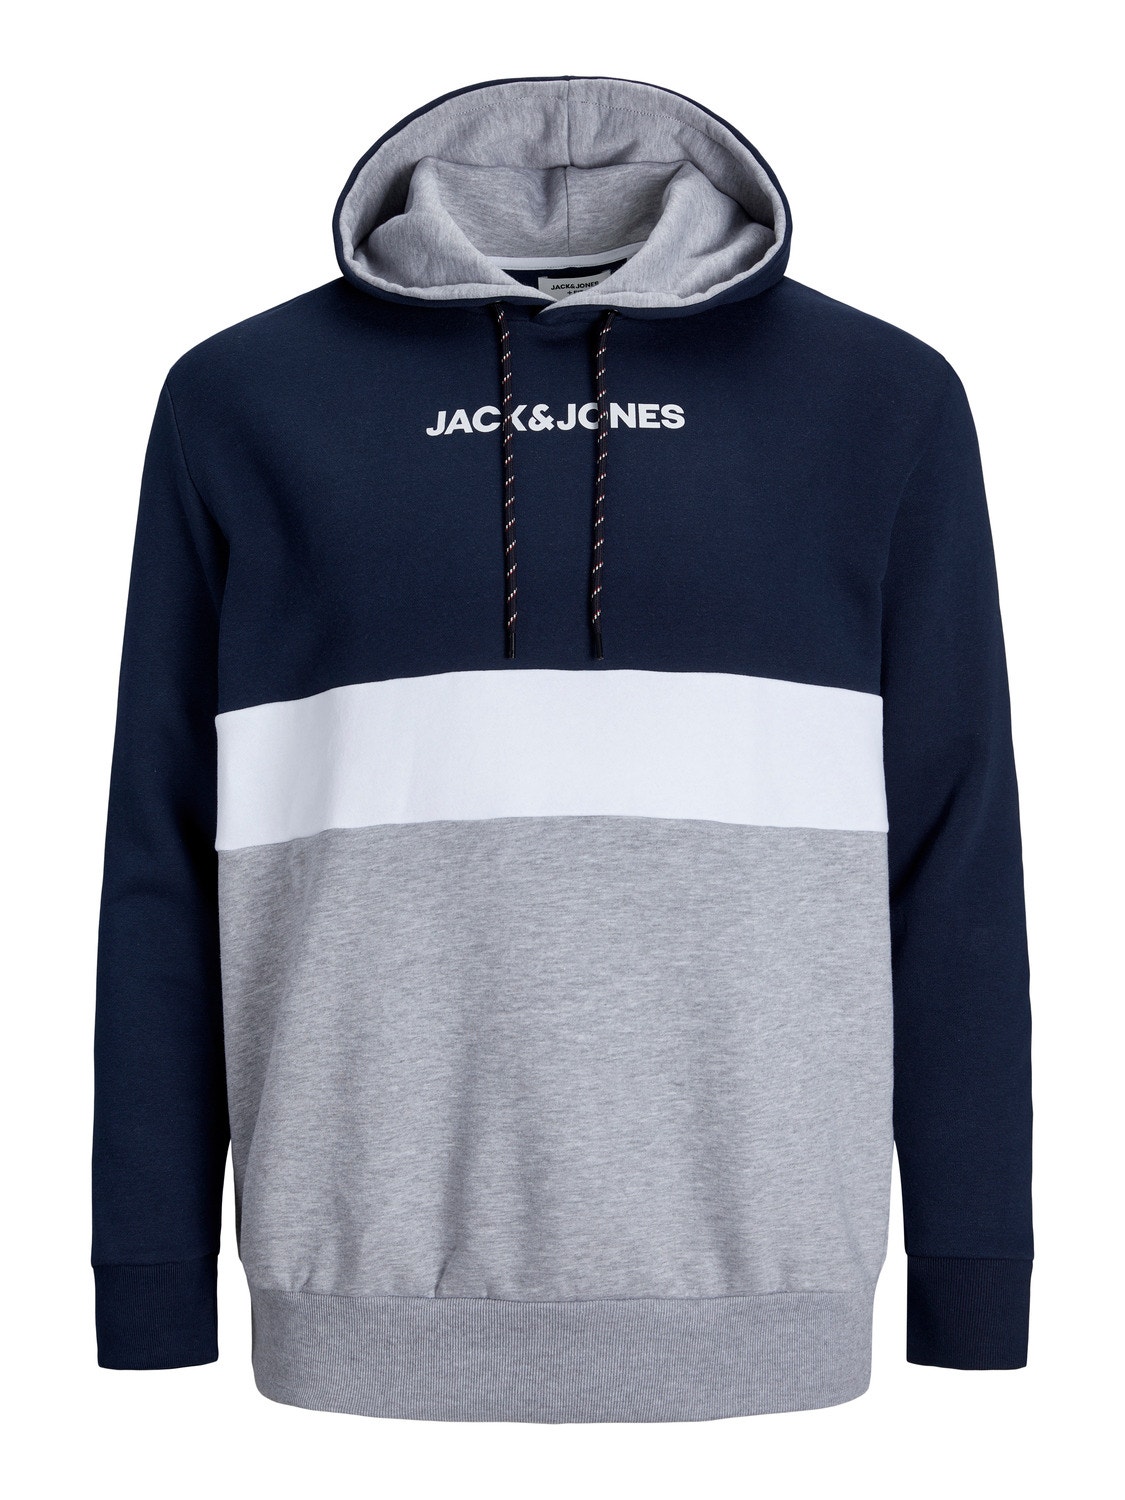 Jack & Jones Plus Size Sudadera con capucha Bloques de color -Navy Blazer - 12236900